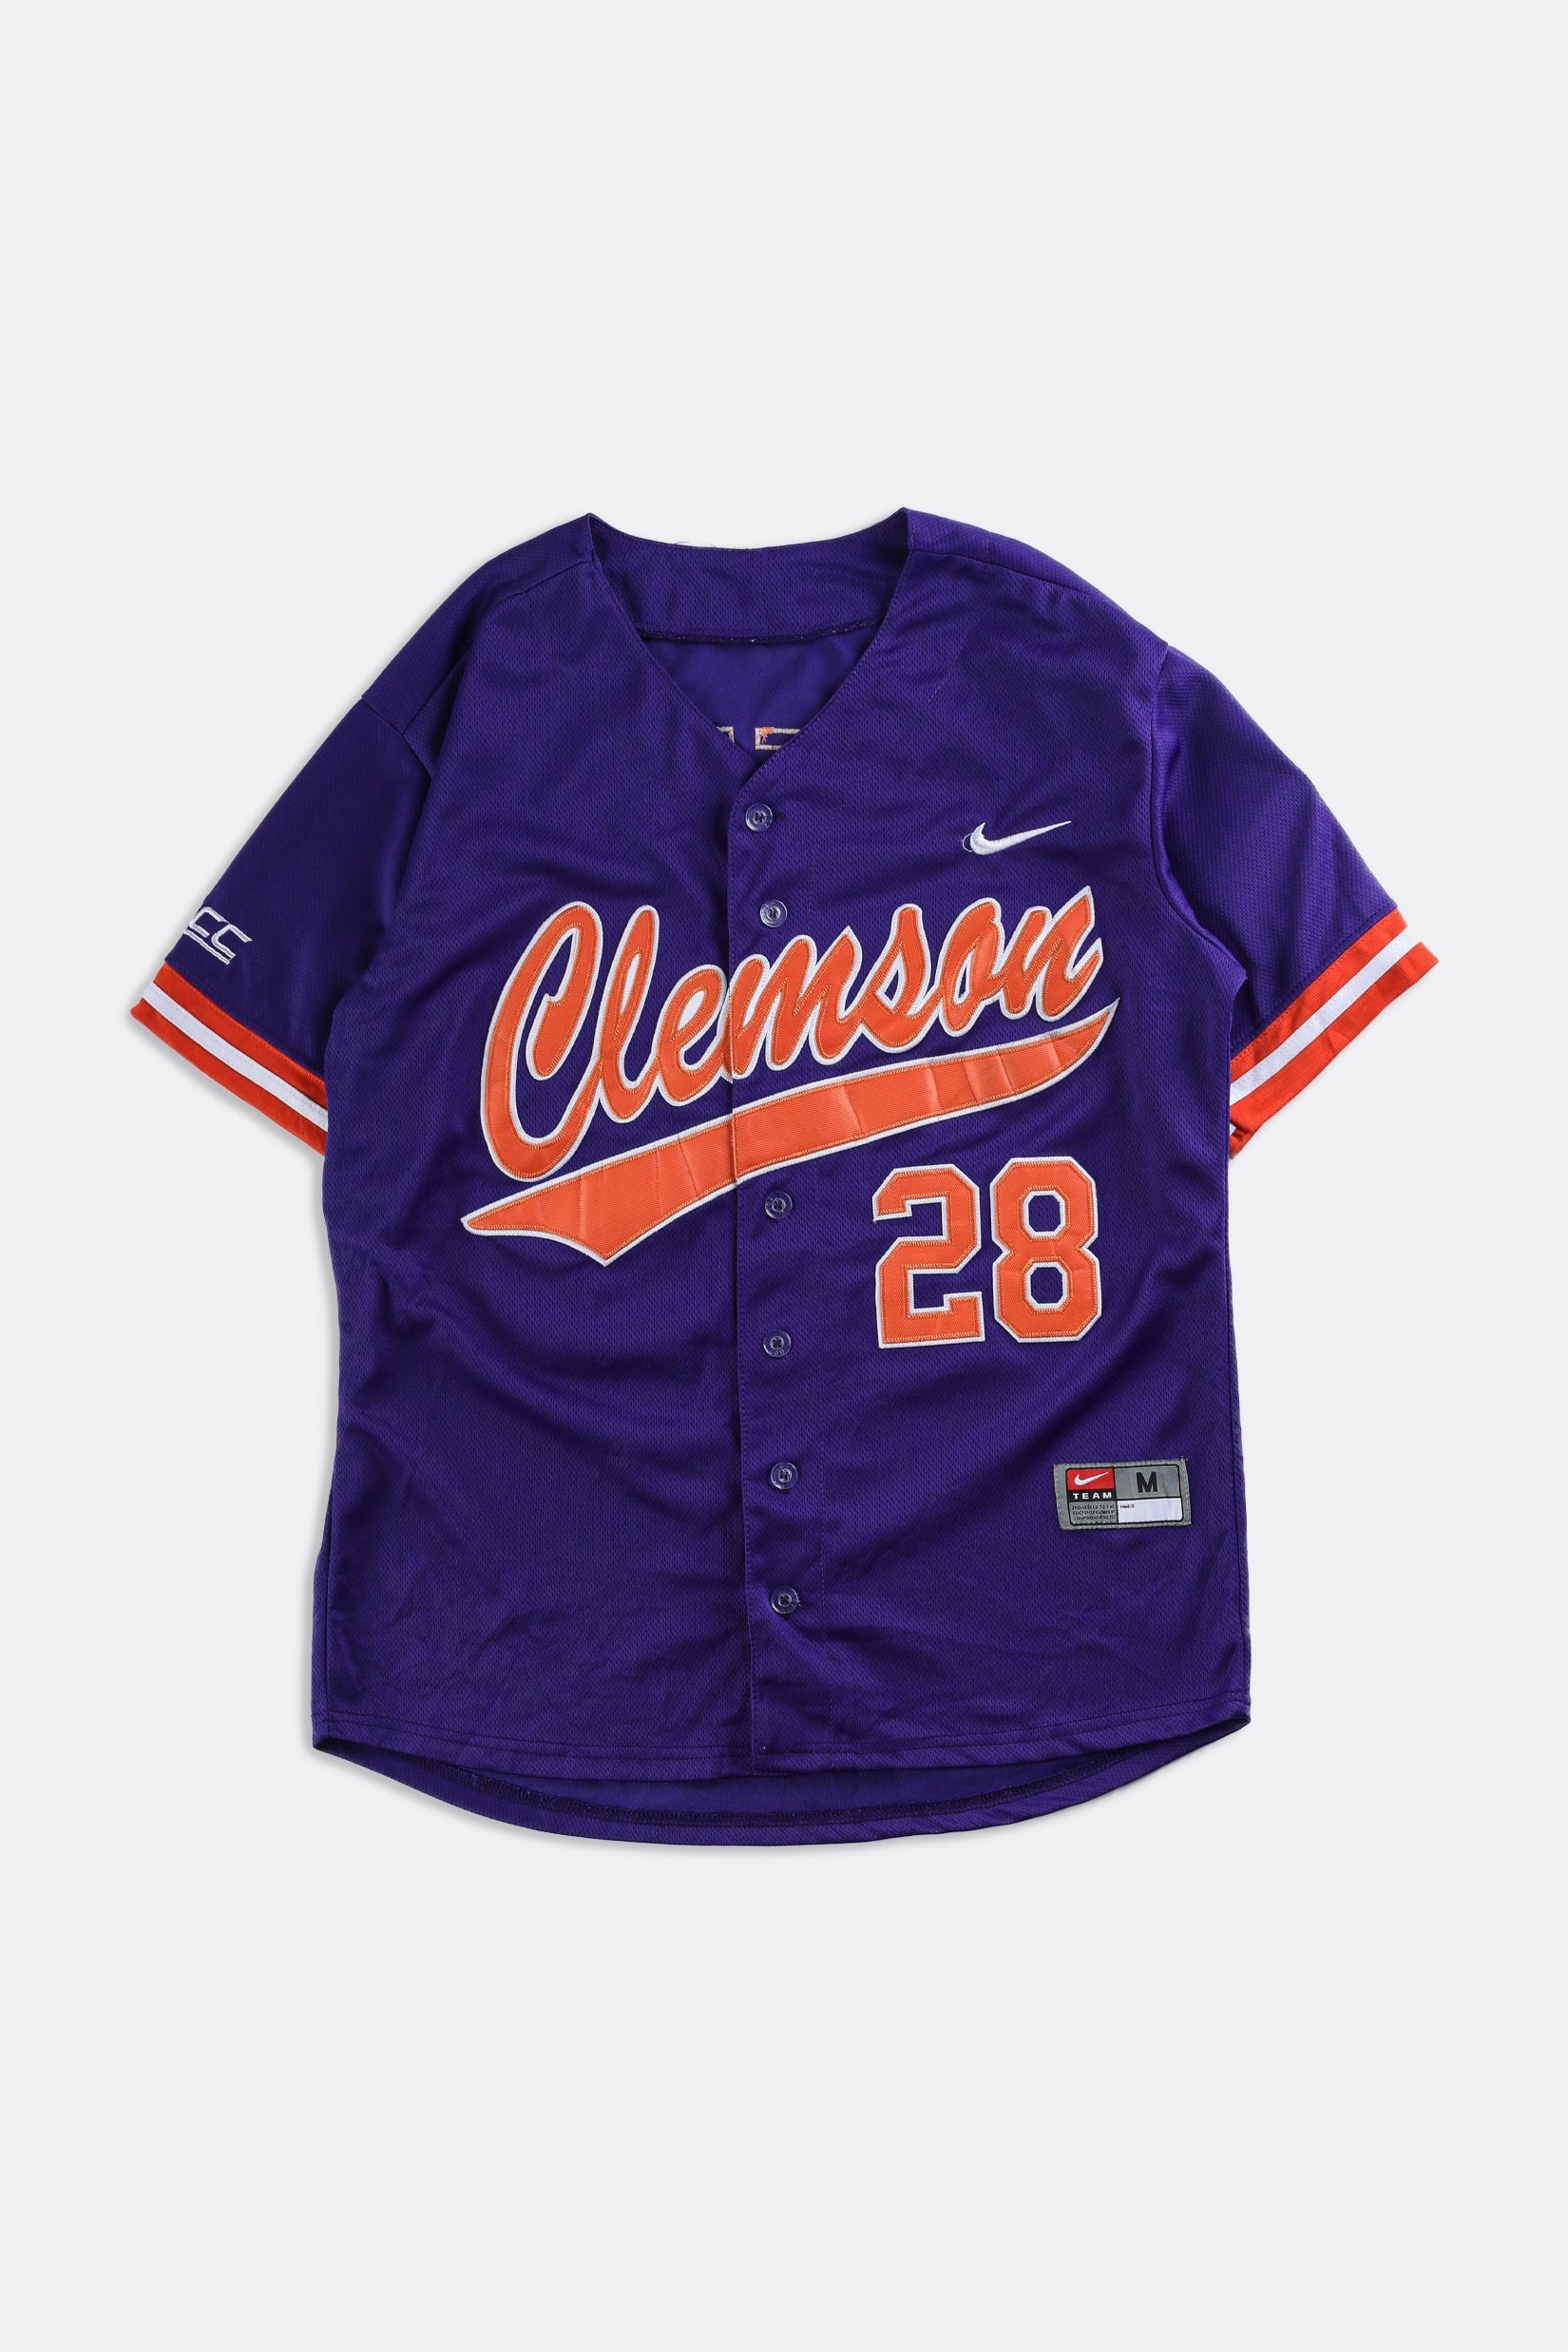 clemson baseball uniforms